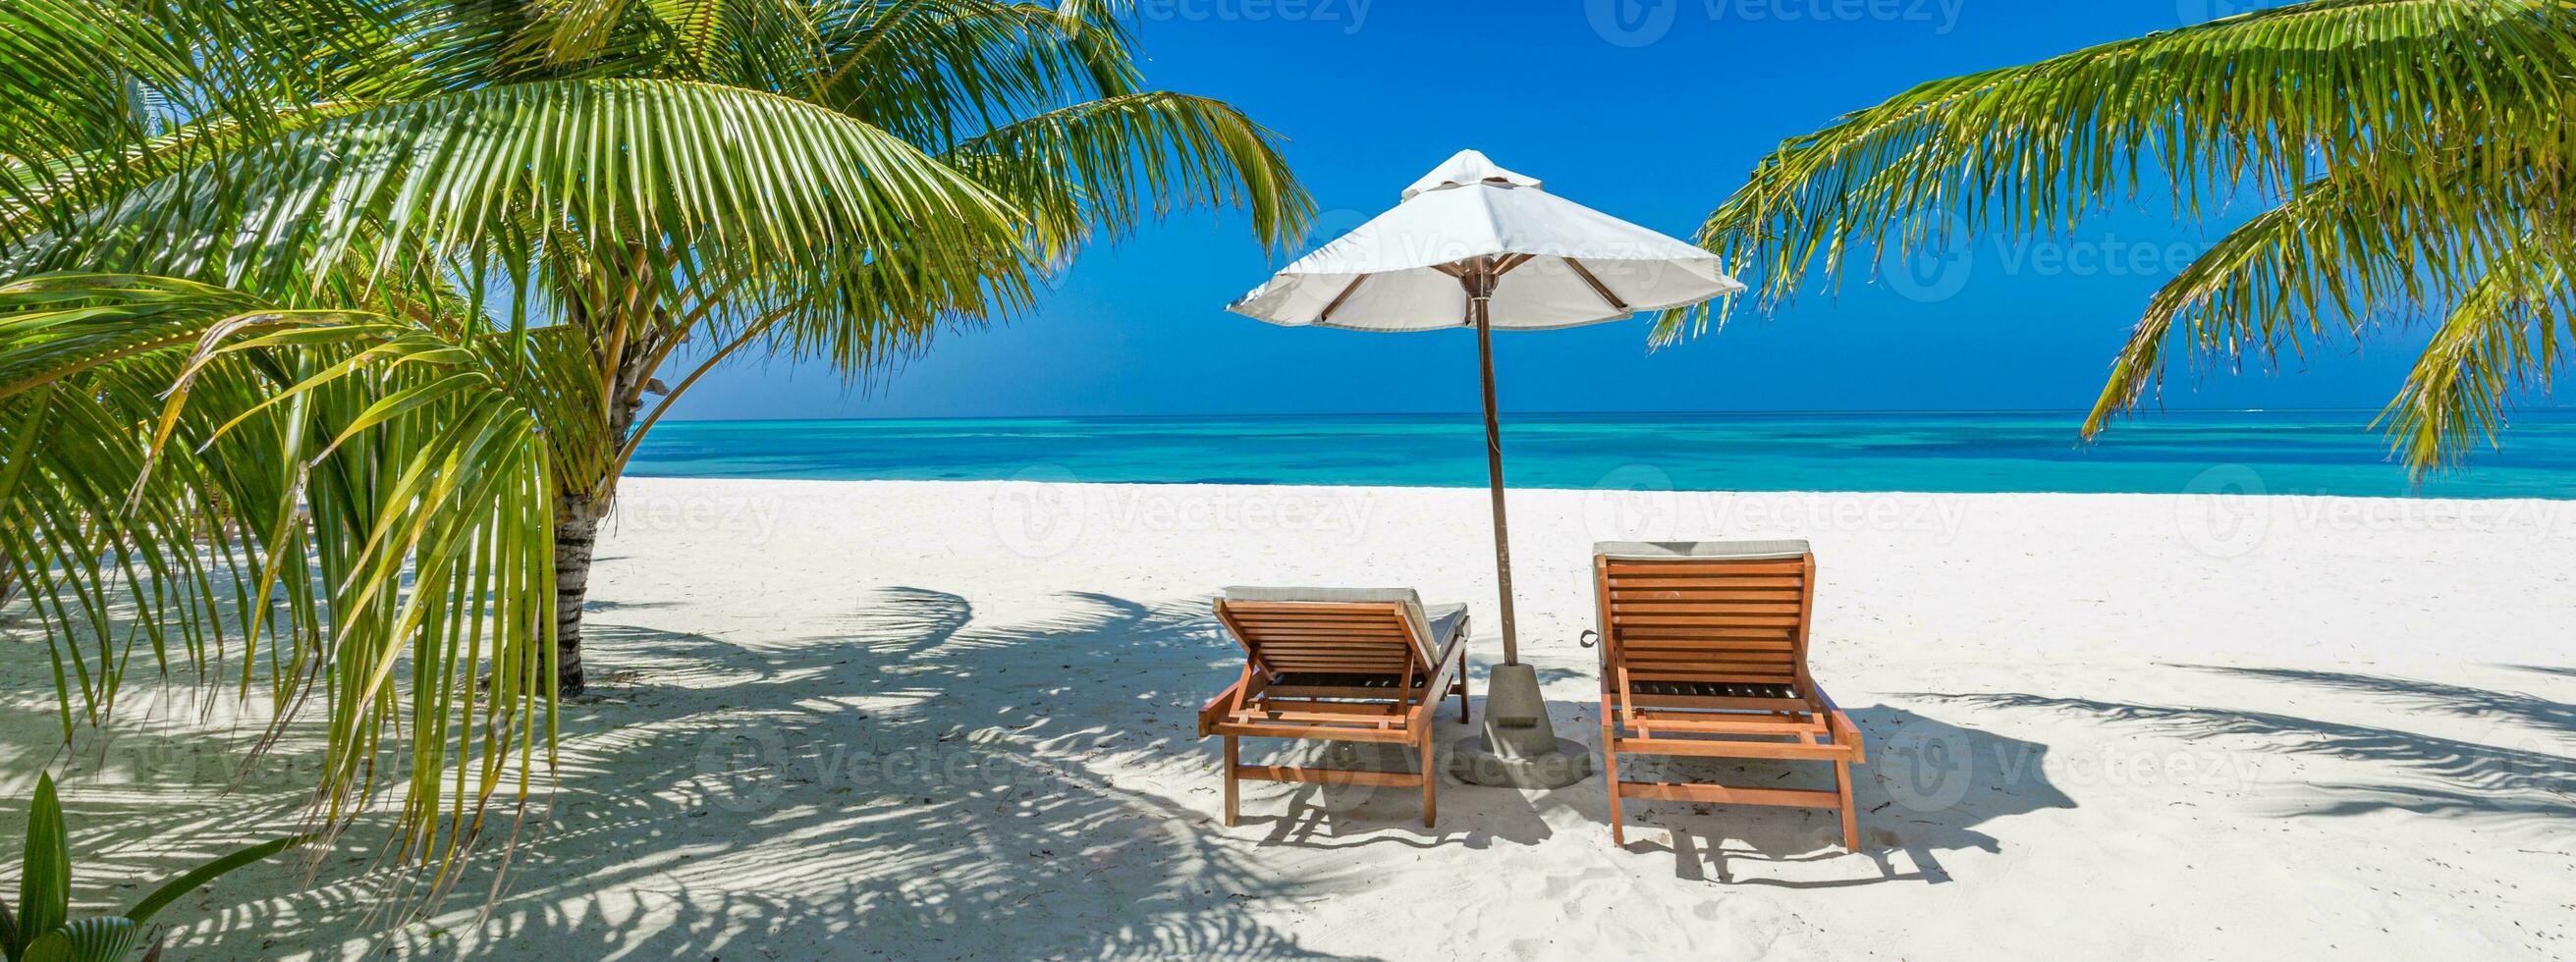 mooi tropisch strand spandoek. wit zand kokosnoot palmen luxe vrije tijd levensstijl stoelen net zo breed panorama achtergrond concept. verbazingwekkend strand landschap, romantisch tafereel paar huwelijksreis reizen bestemmingen foto